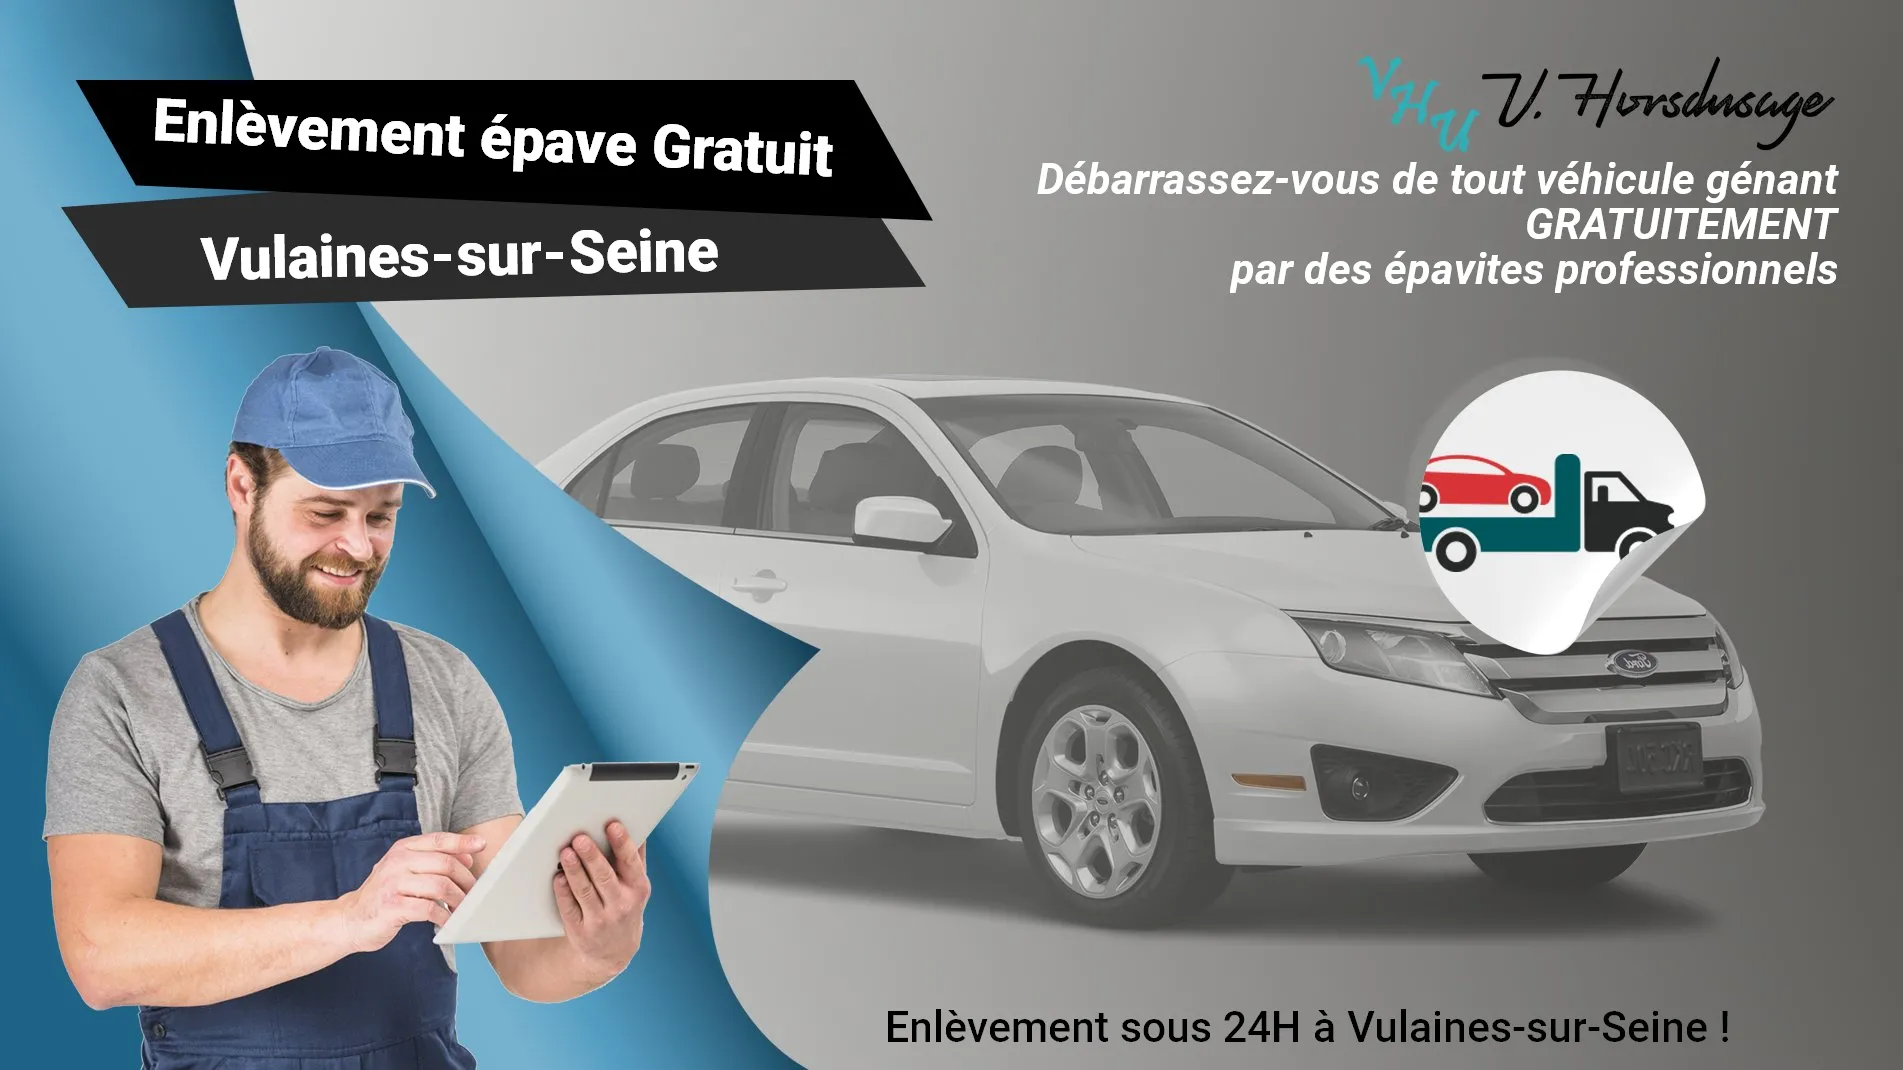 Pour un enlèvement gratuit à Vulaines-sur-Seine, contactez nos épavistes agréé VHU